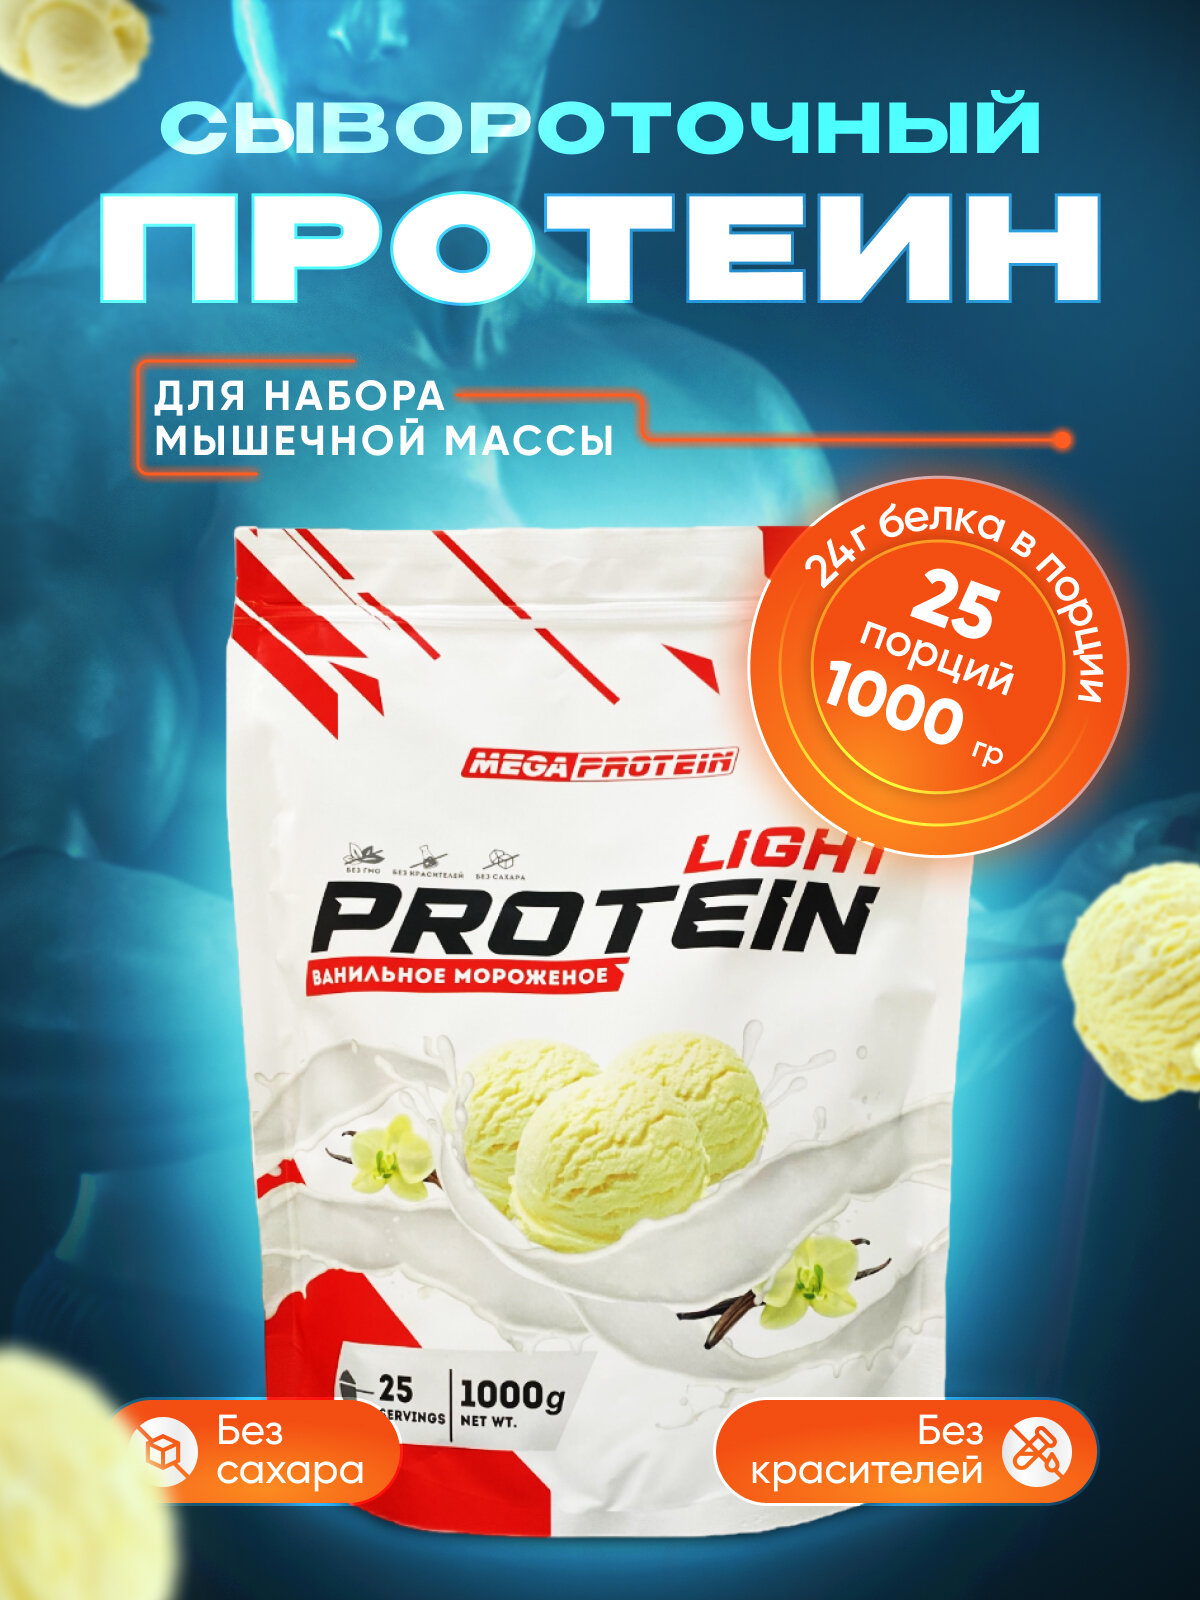 Сывороточный протеин WHEY PROTEIN LIGHT (Мороженое) 1000 гр